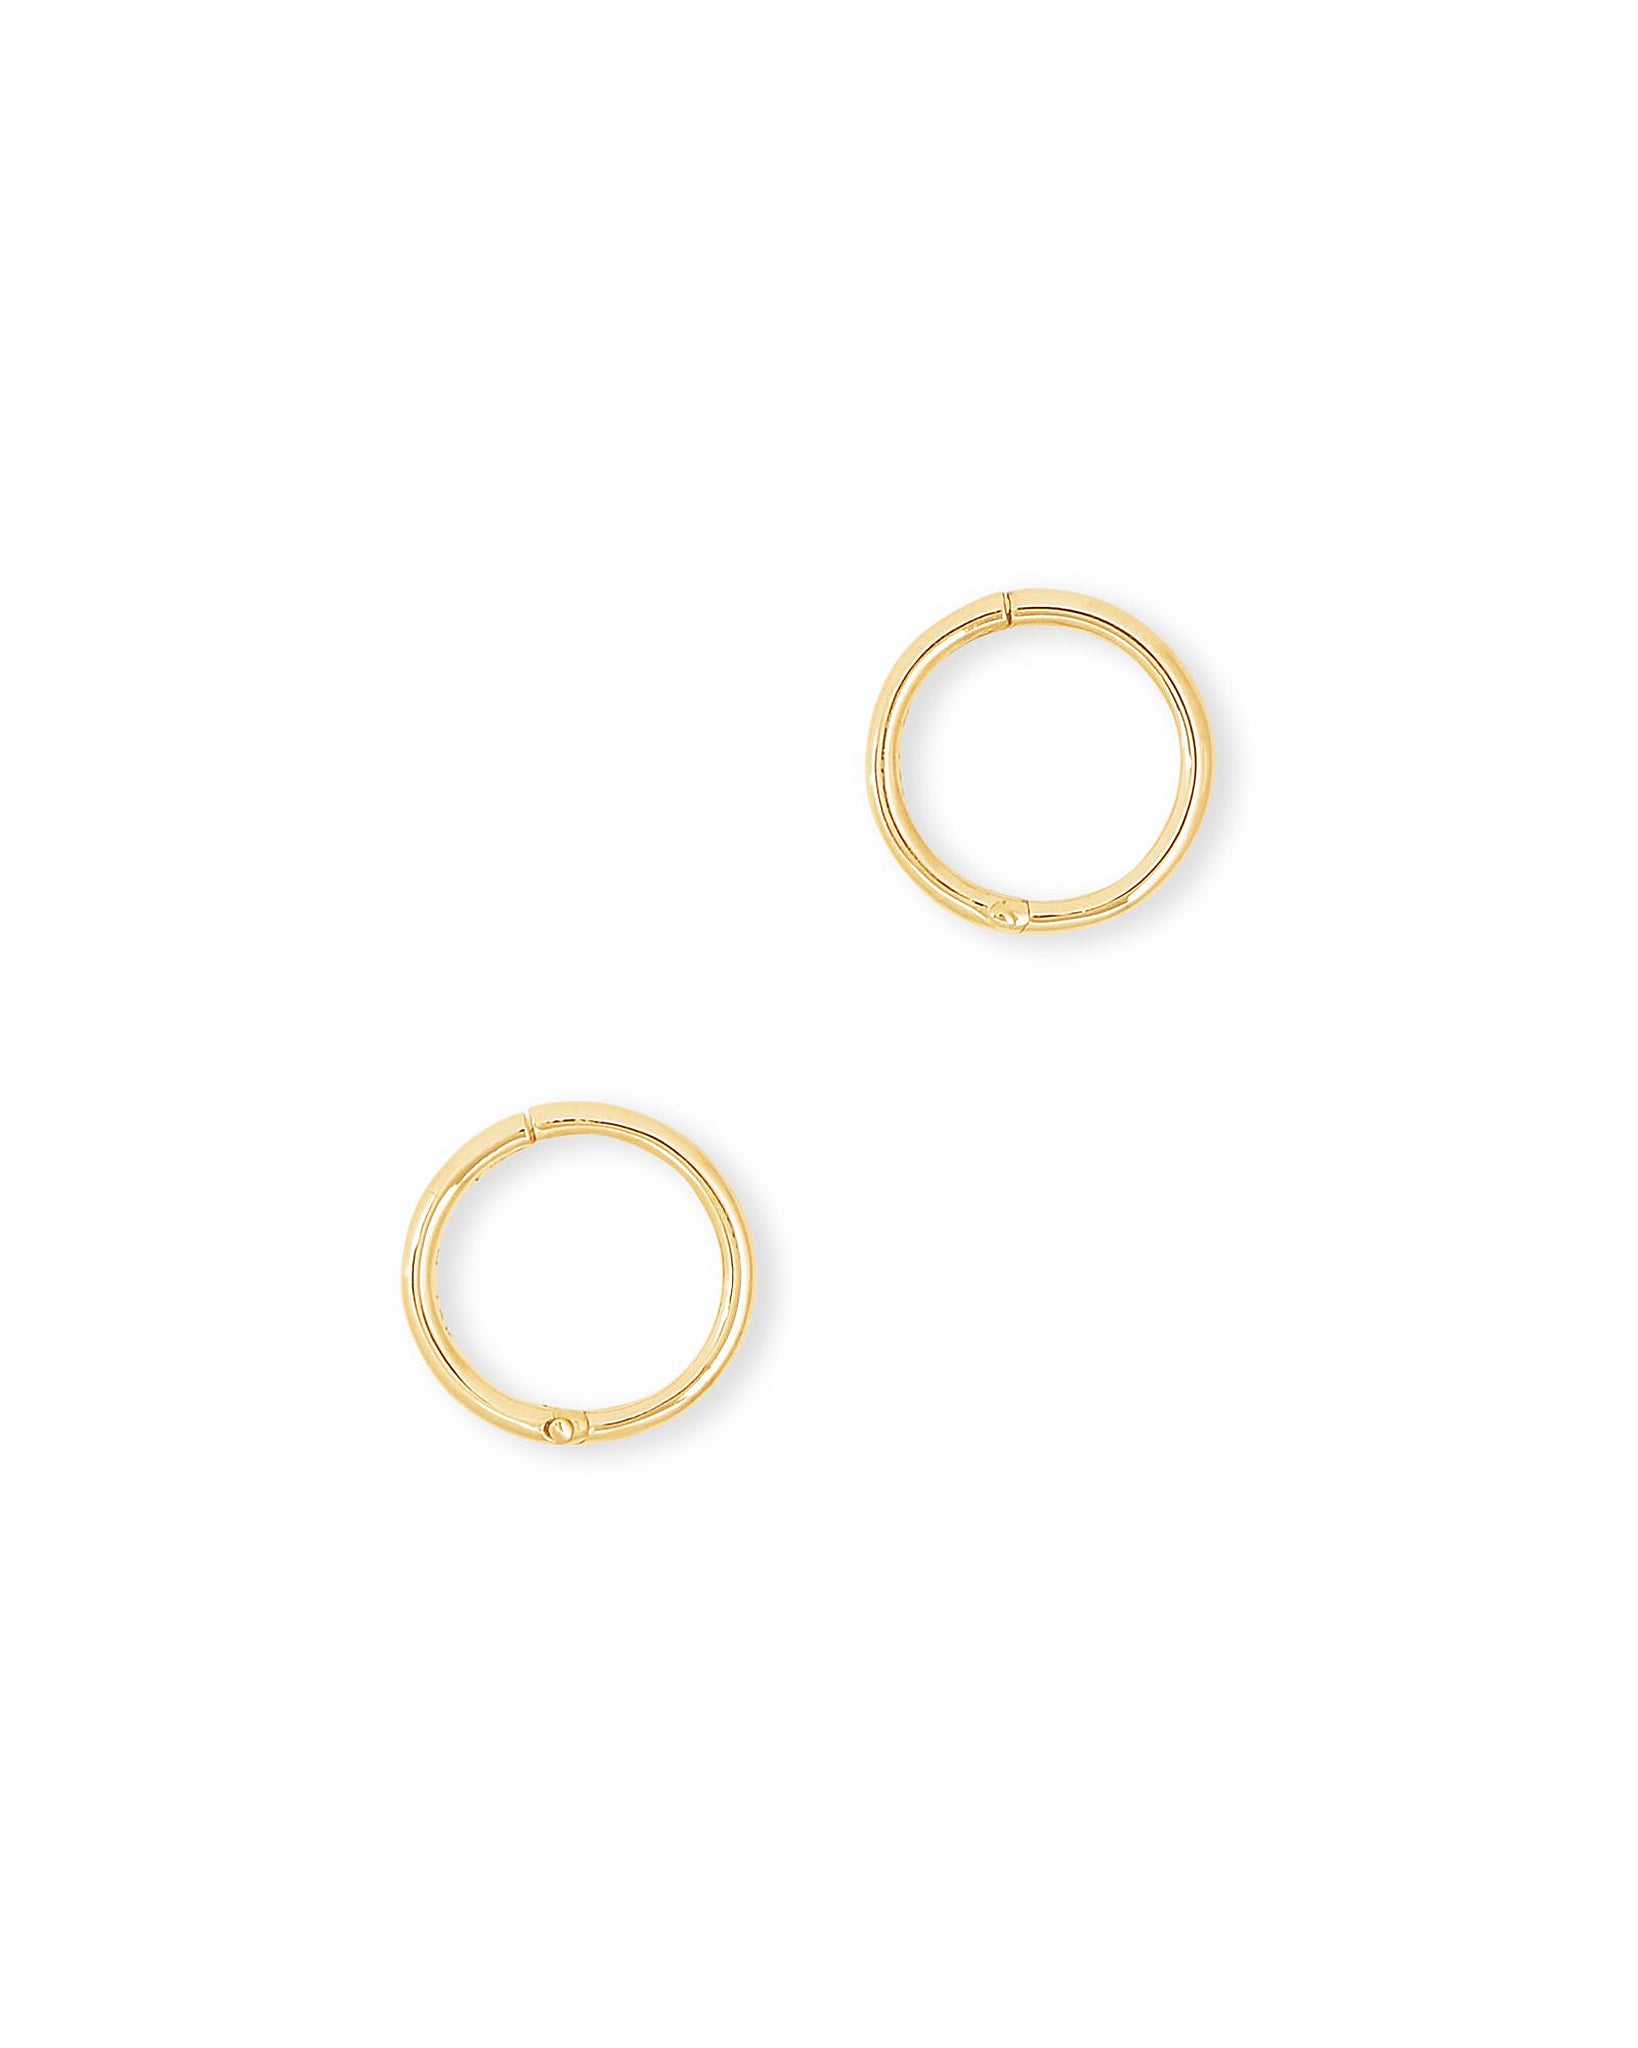 Kendra Scott Keeley 10mm Huggie Hoop Earrings in 18k Gold Vermeil